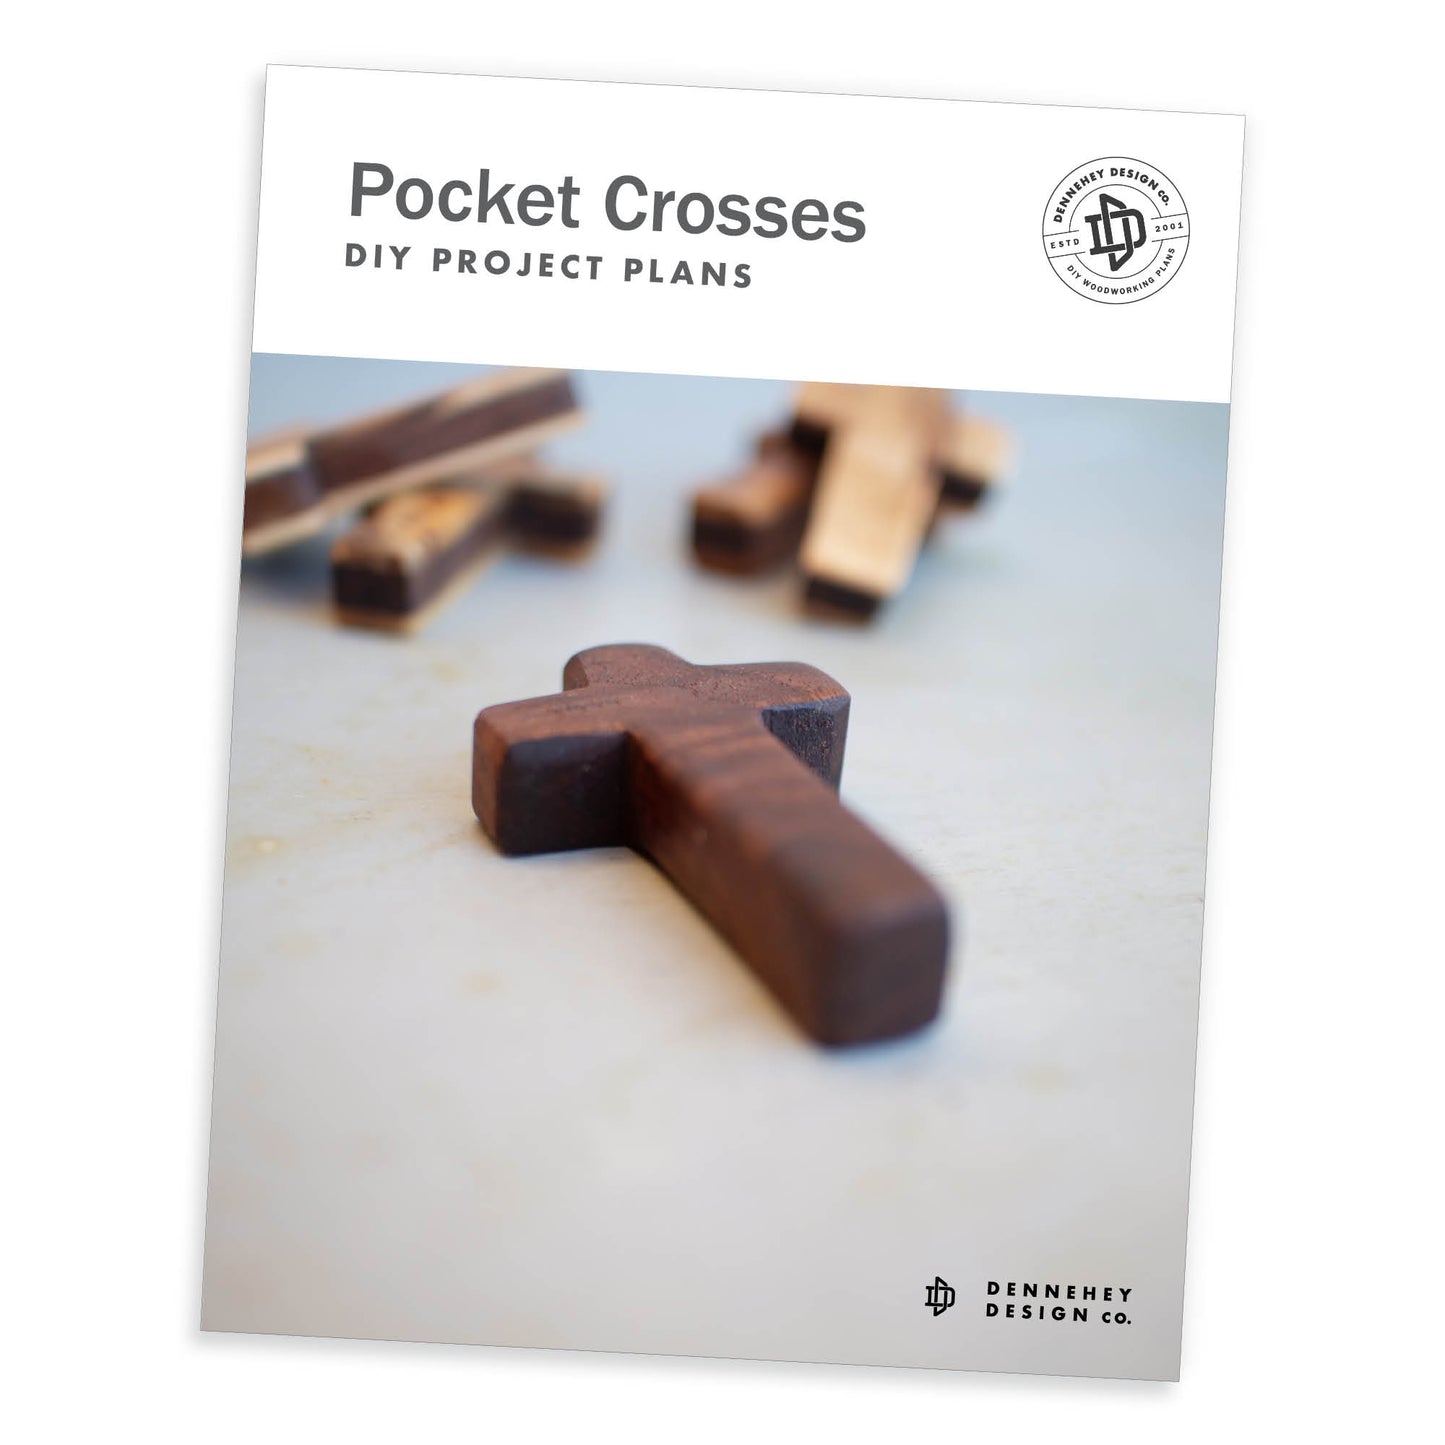 Pocket Crosses DIY Project Plans – Dennehey Design Co.